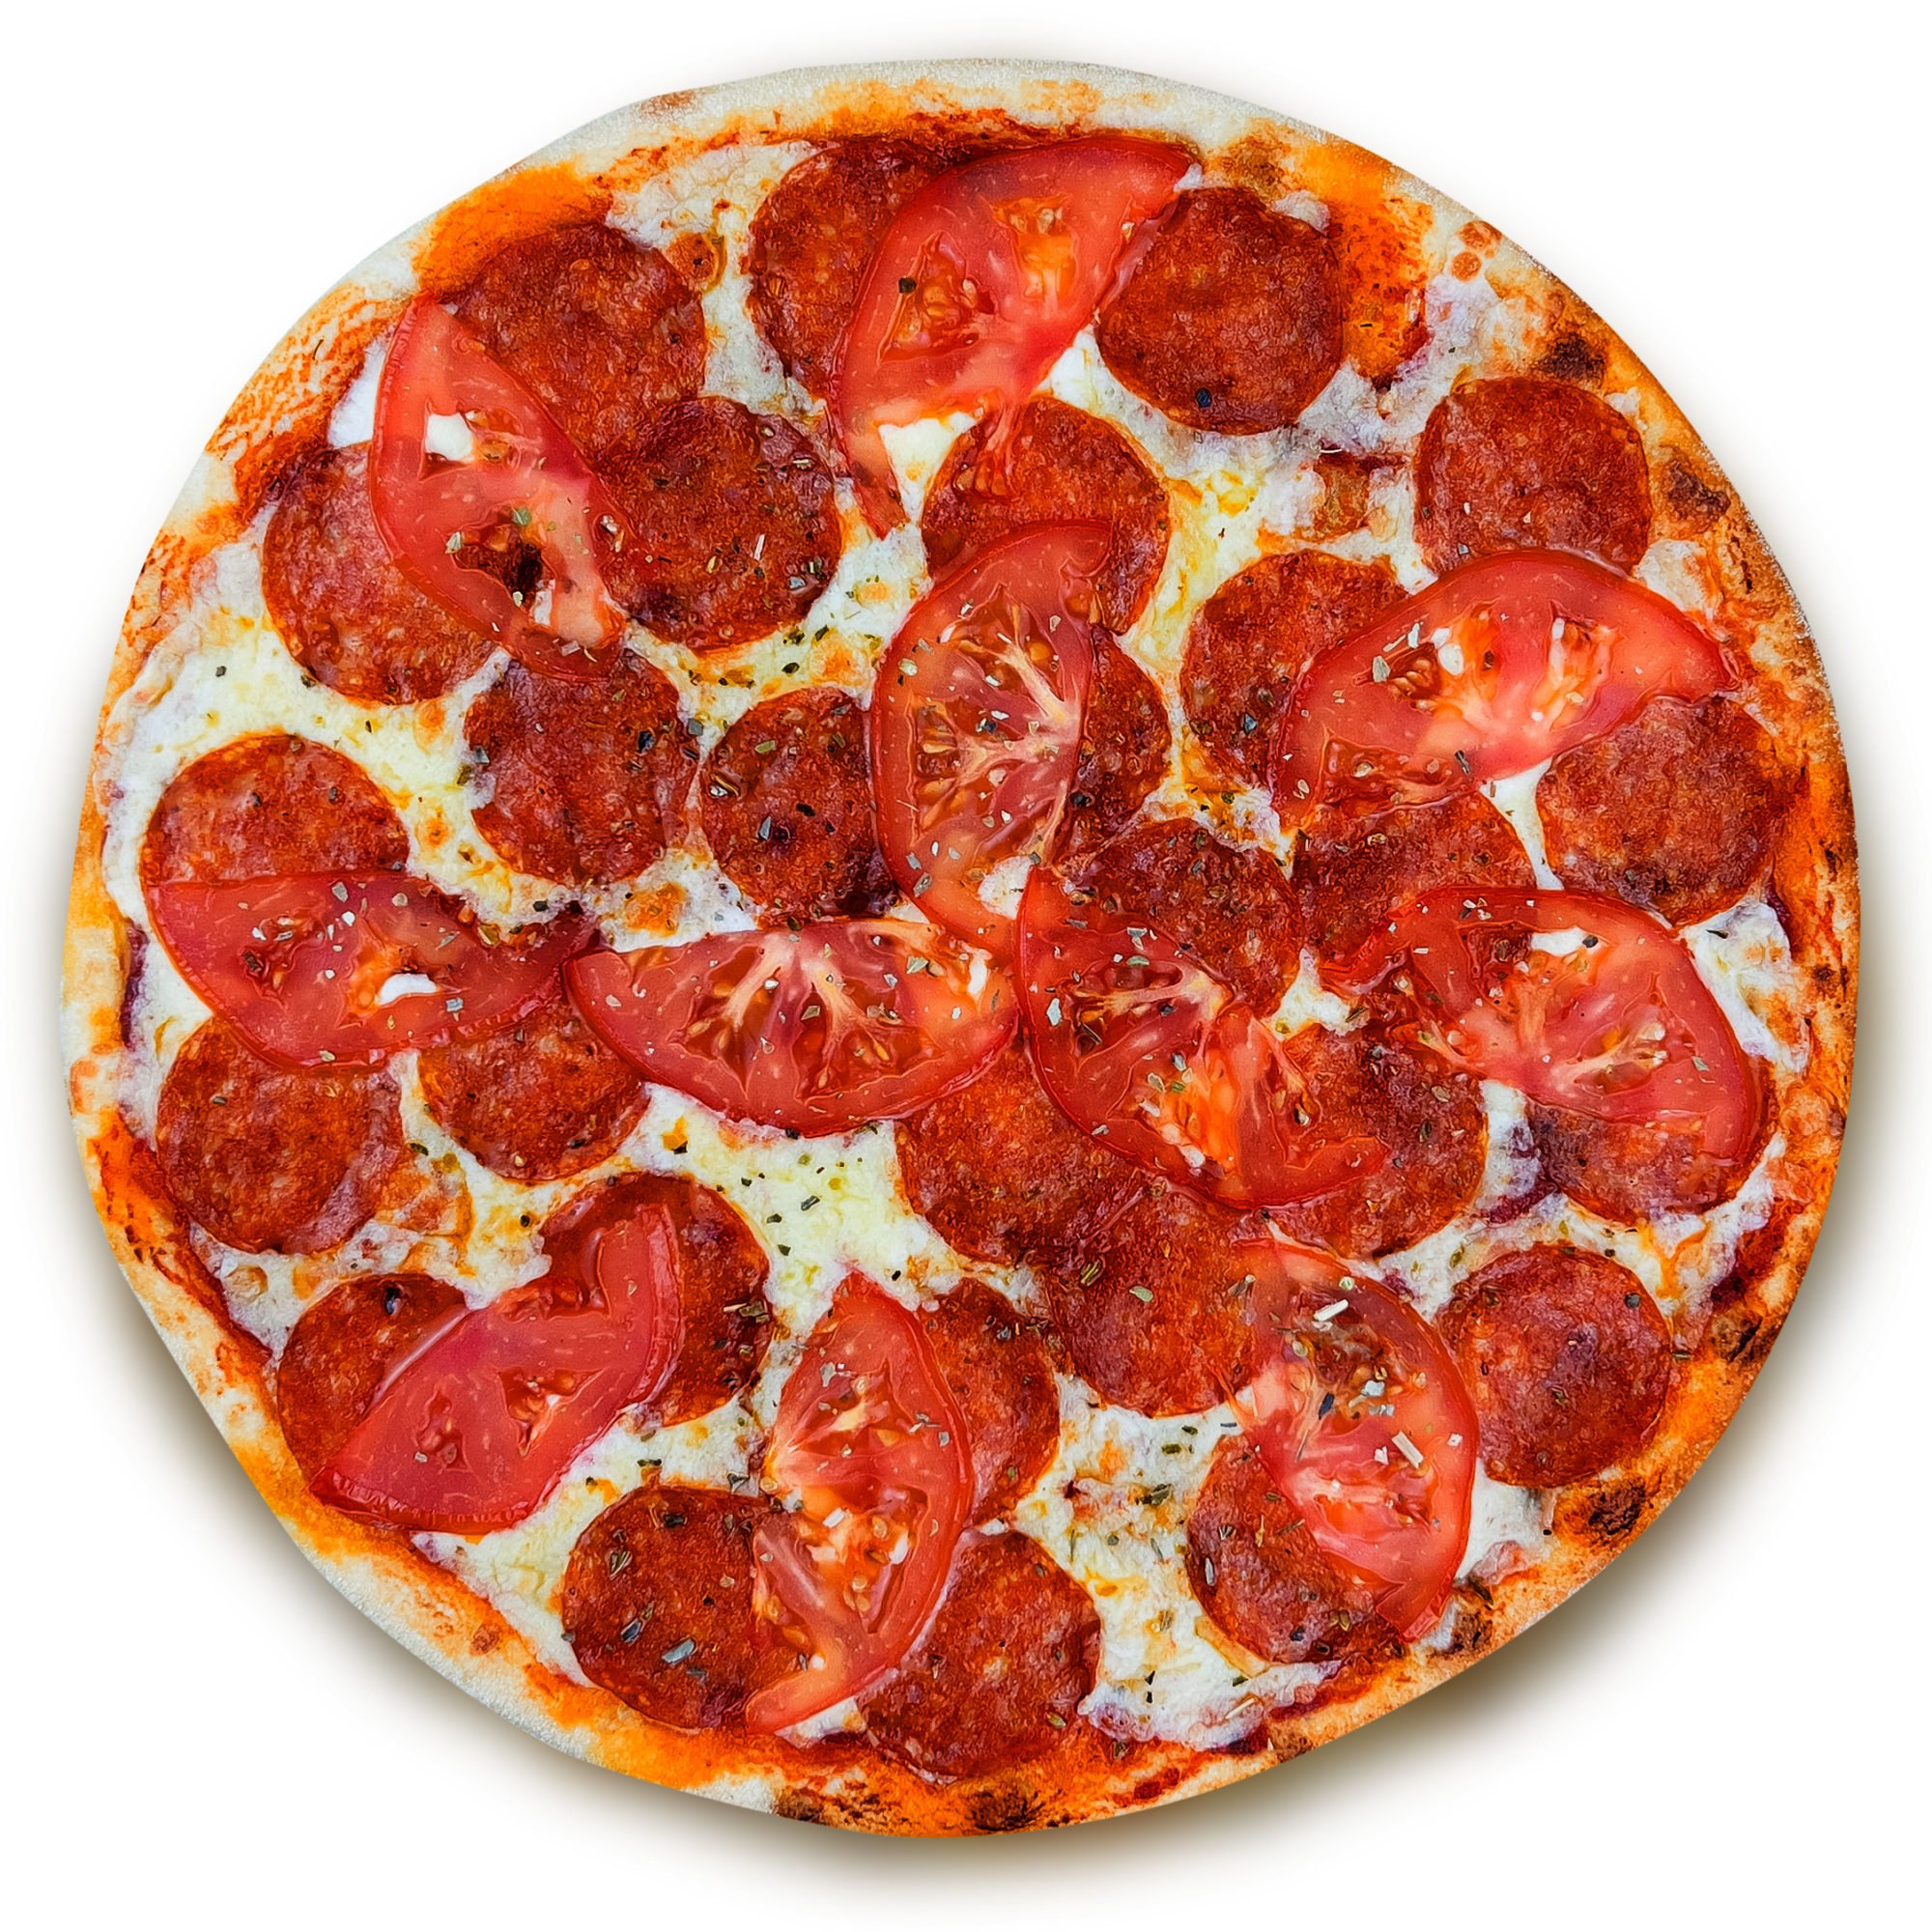 технология приготовления пиццы пепперони фото 39